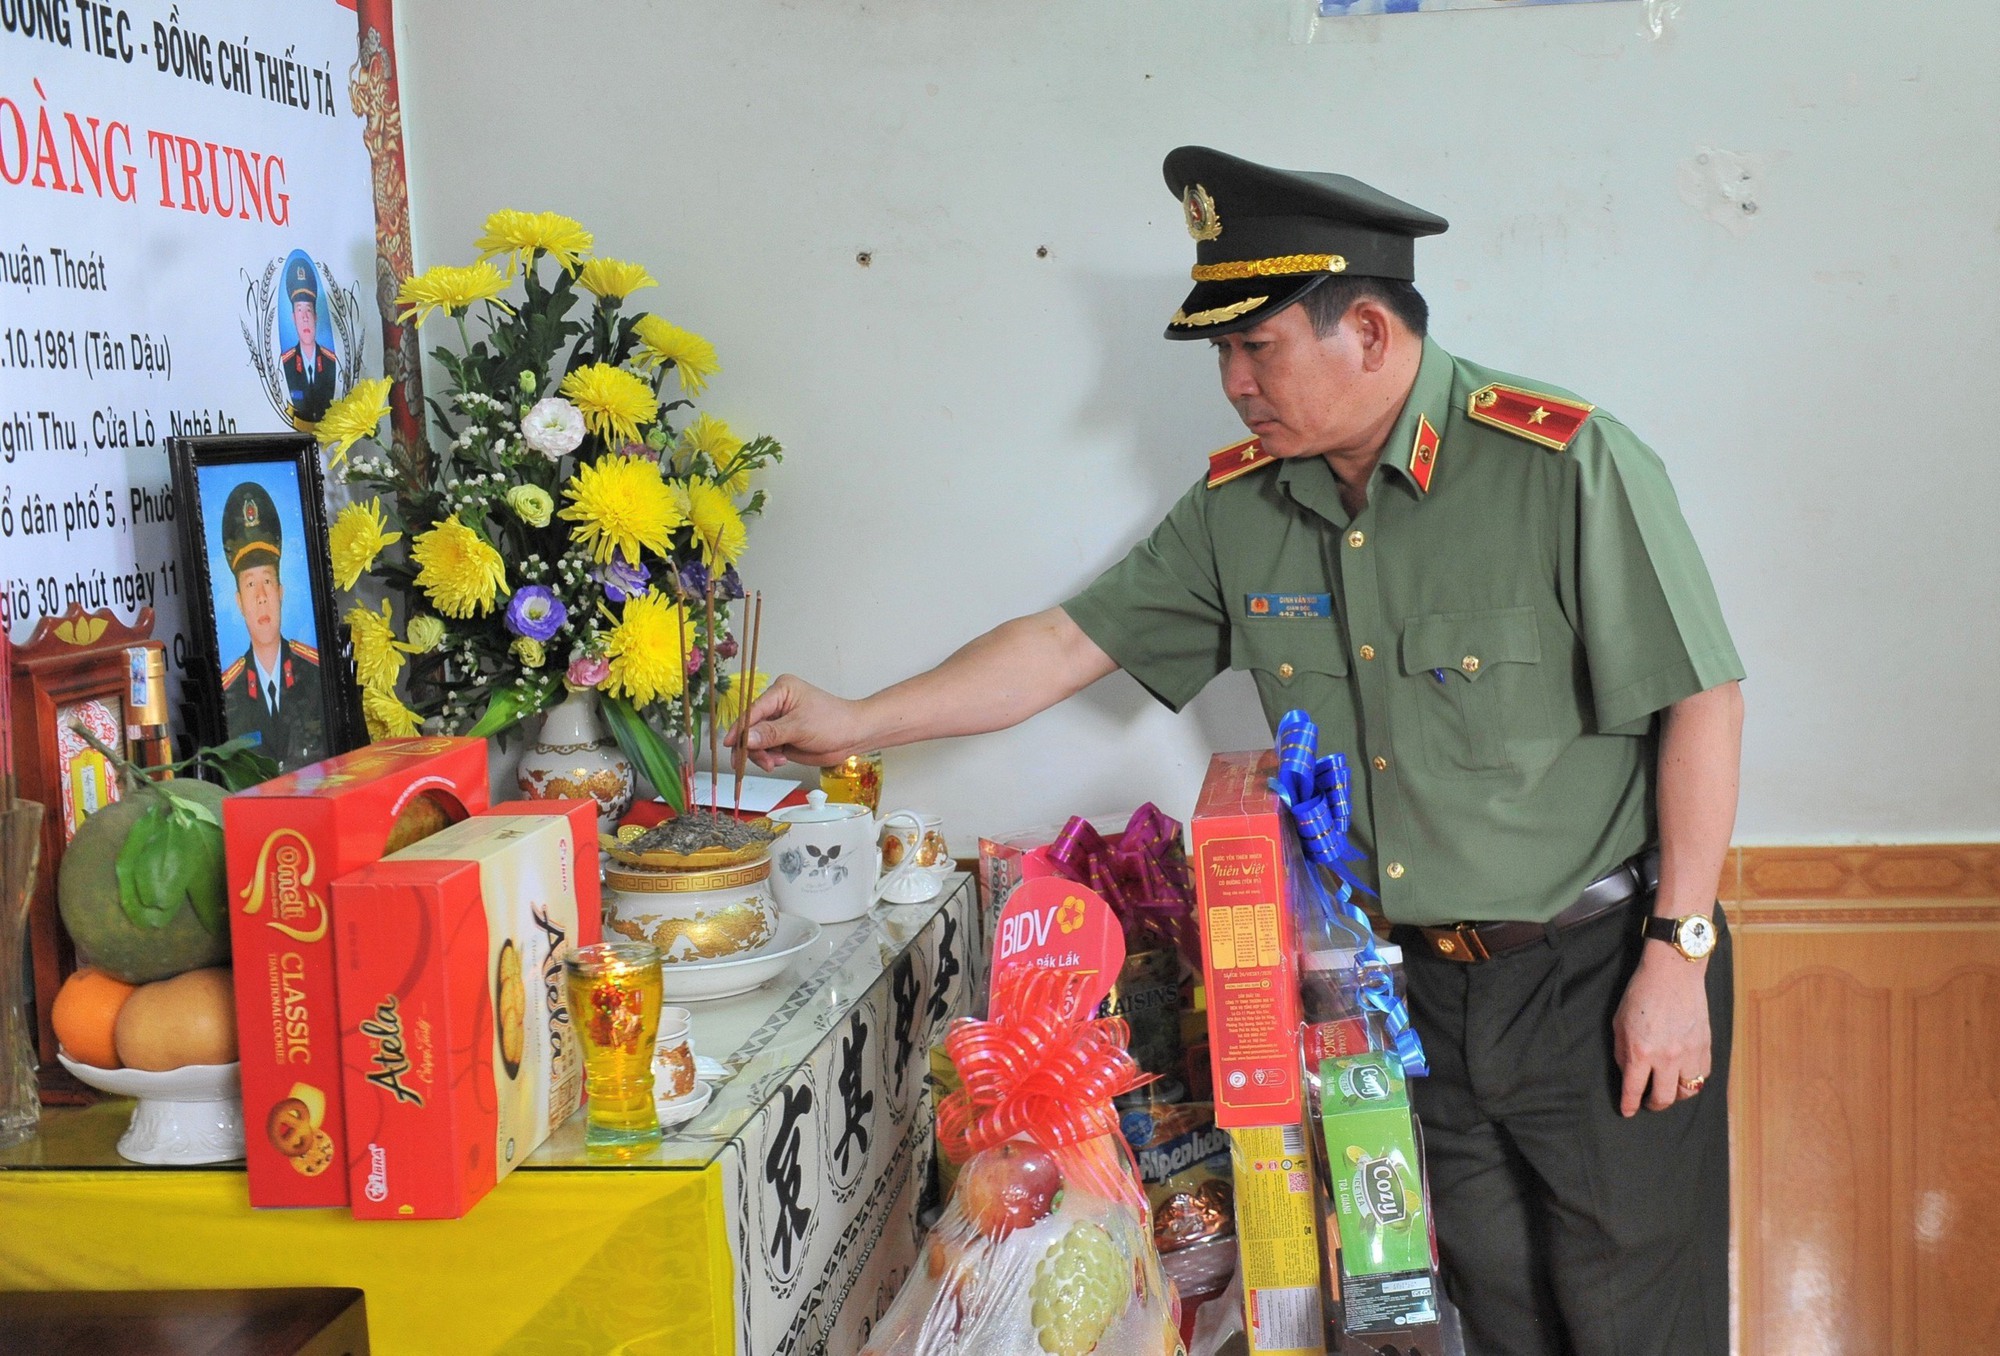 Thiếu tướng Đinh Văn Nơi thăm hỏi các gia đình liệt sĩ, cán bộ Công an trong vụ tấn công tại Đắk Lắk - Ảnh 2.